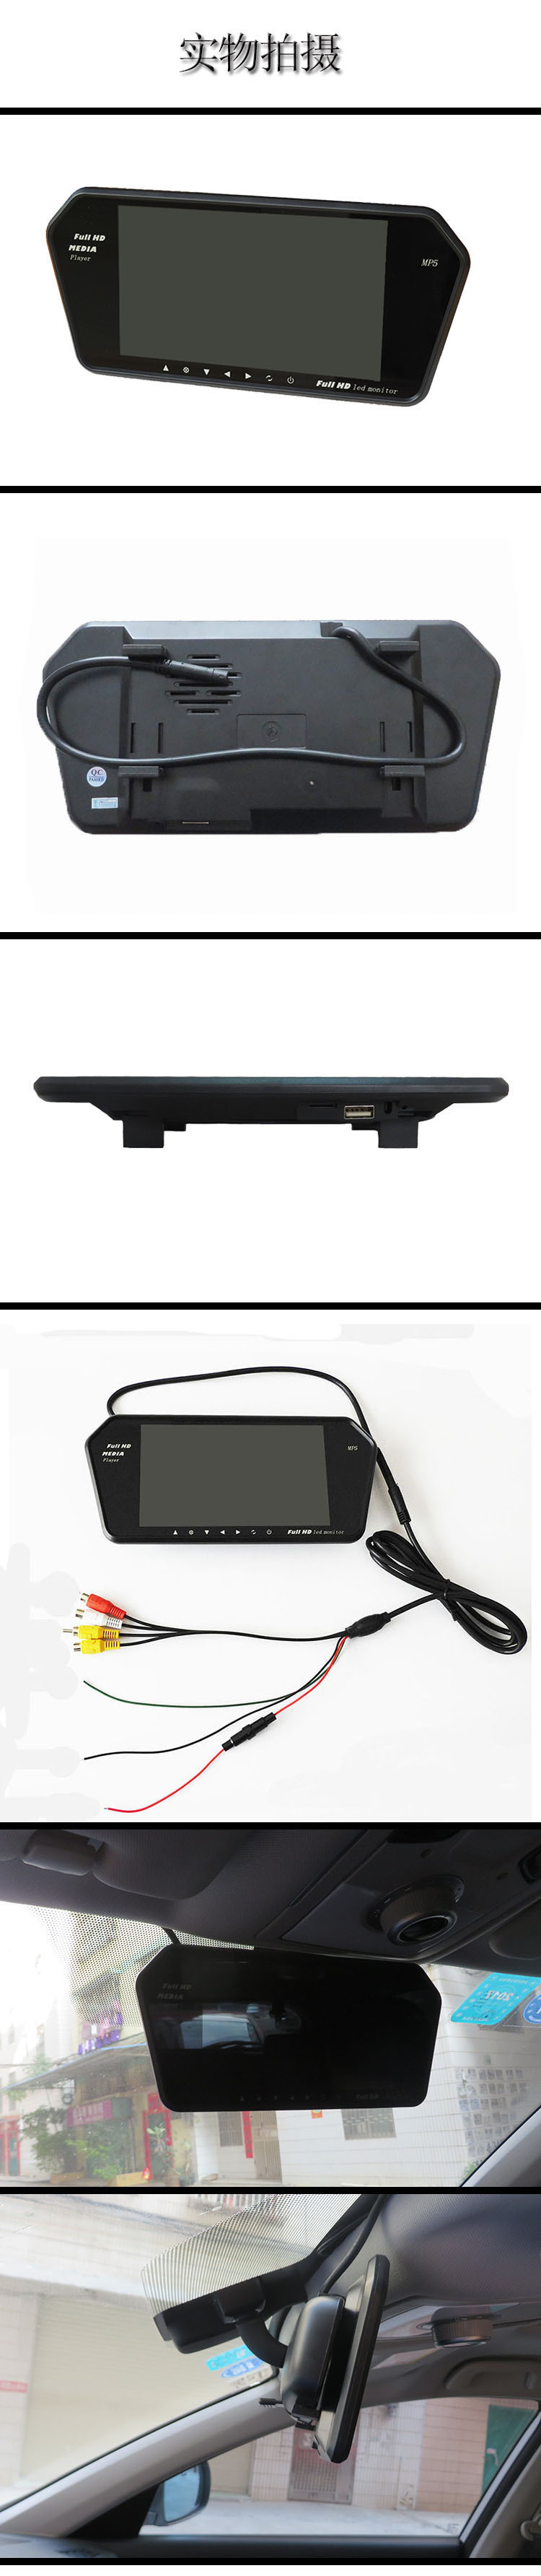 全格式解码超清MP5 车载7寸后视镜液晶屏显示器 倒车影像 FM发射示例图2